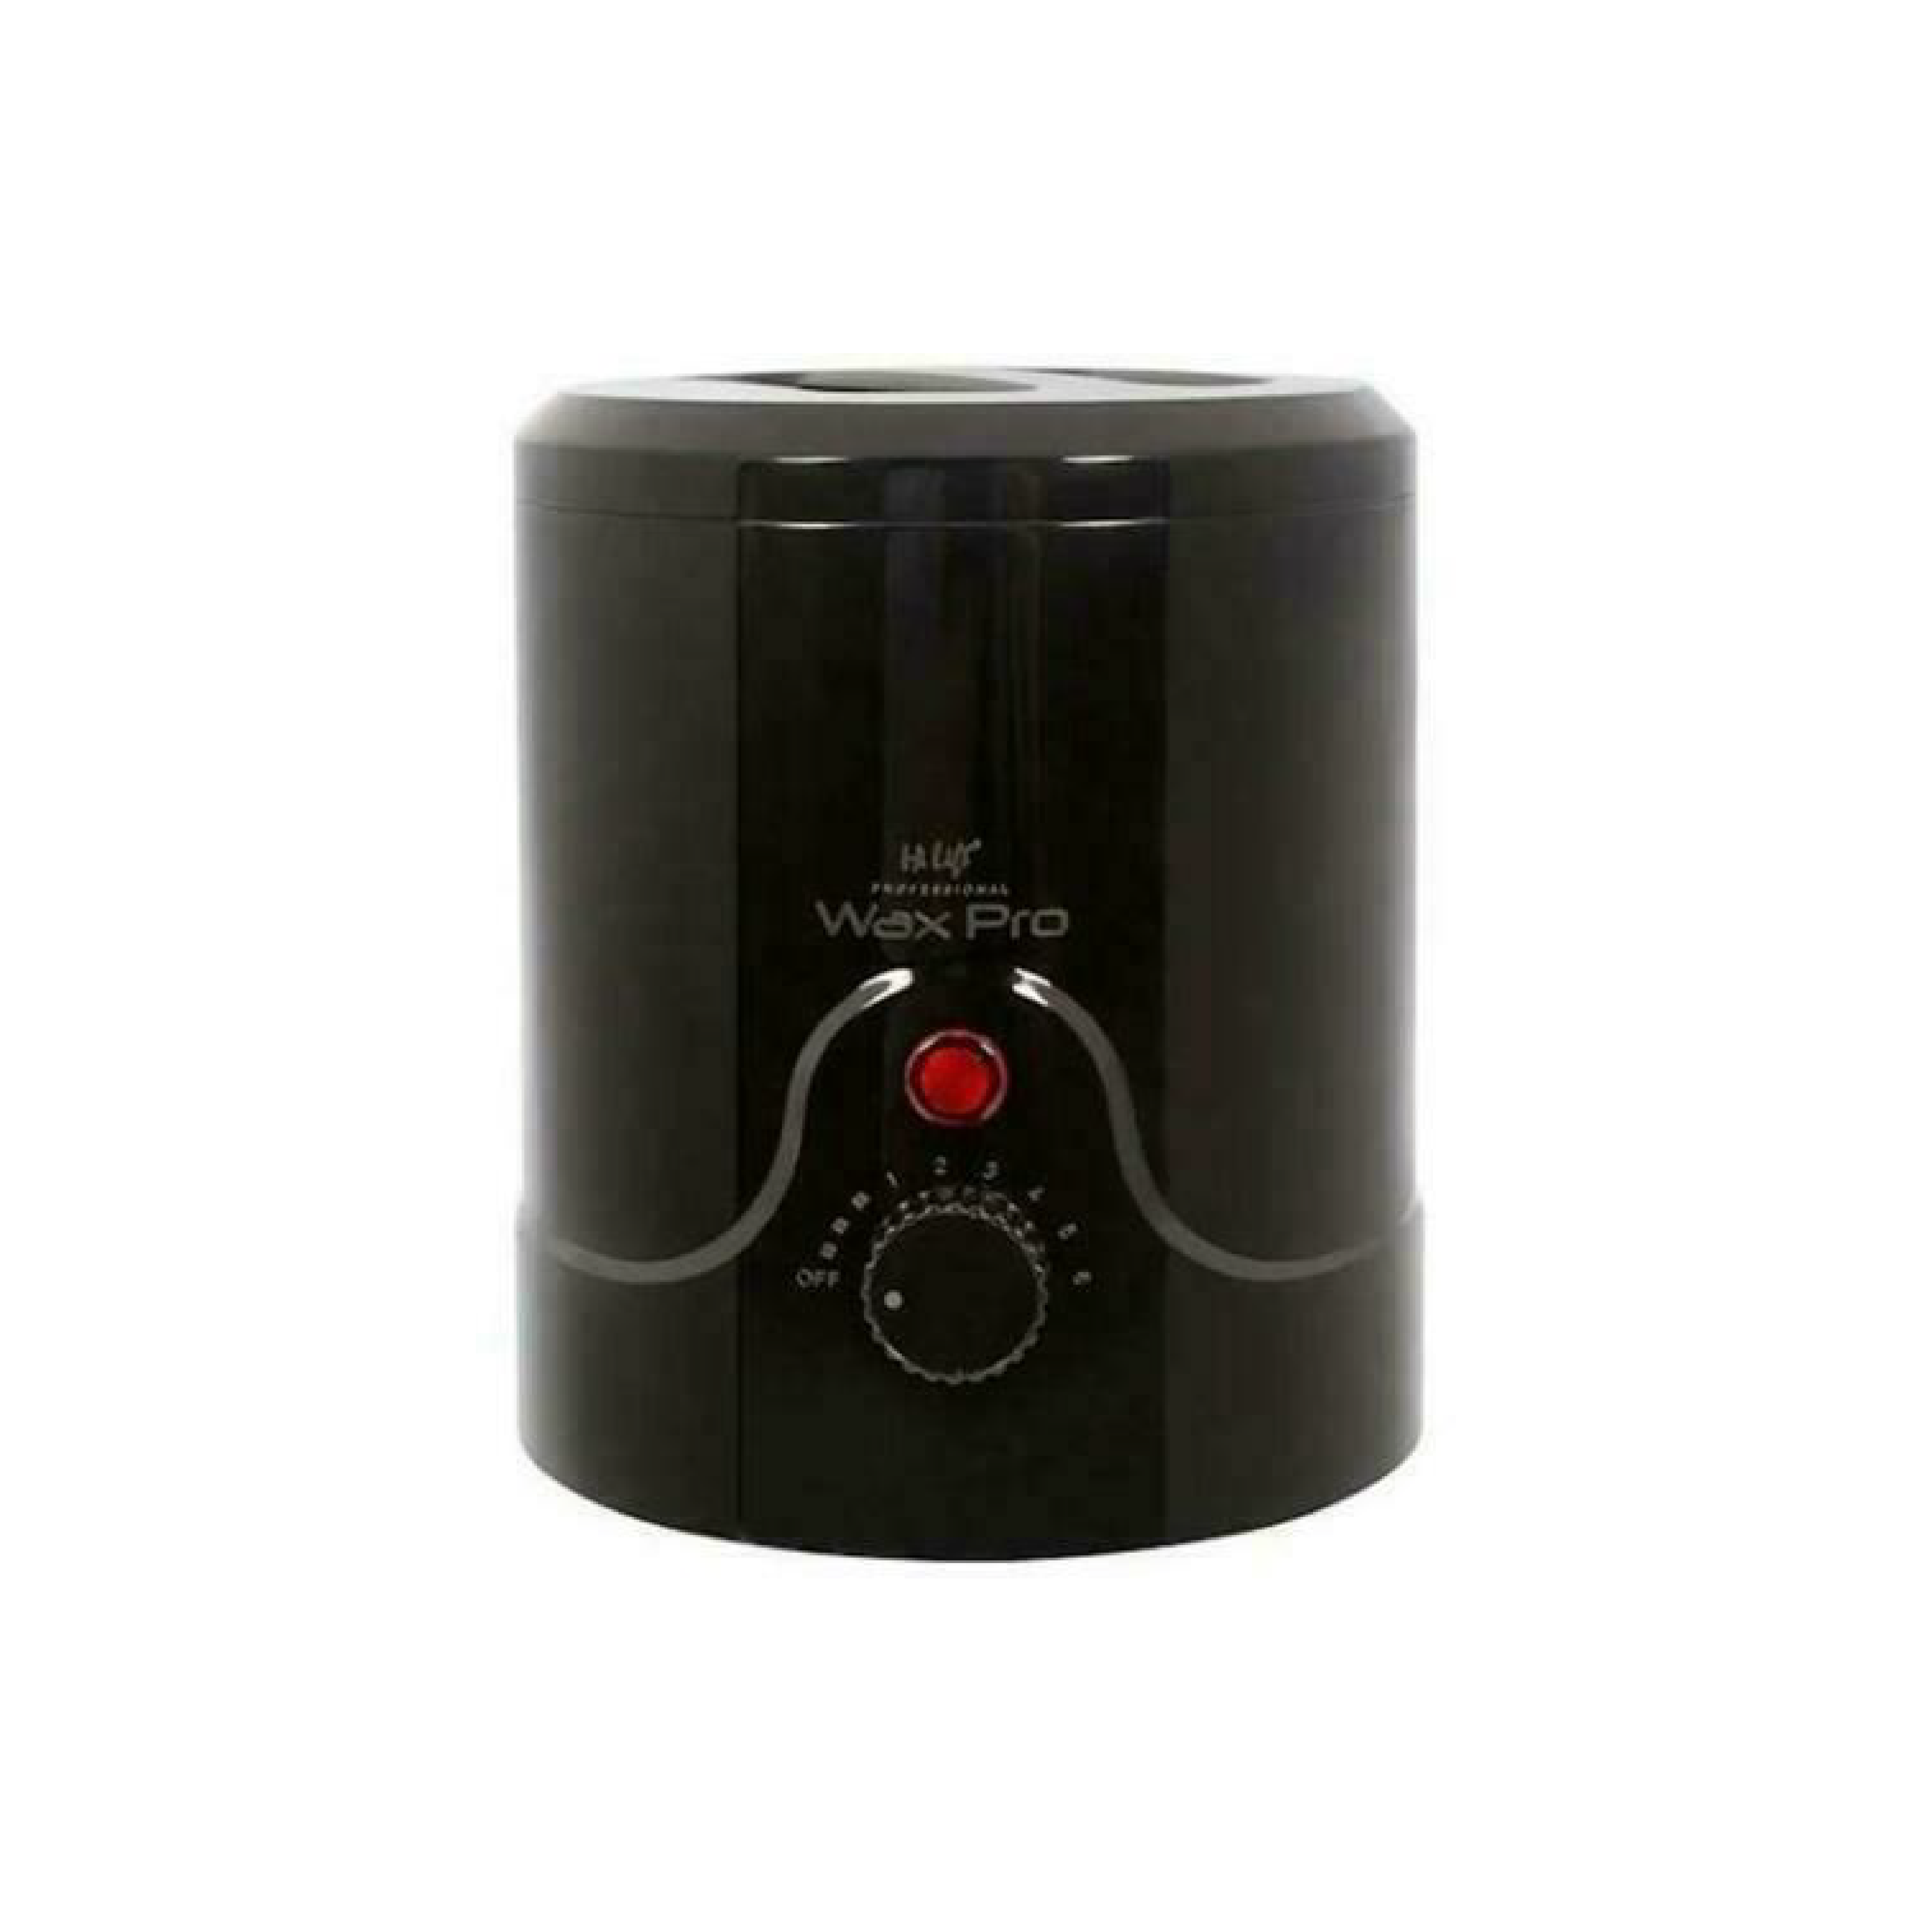 Hi Lift Wax Pro 200 Professional Wax Heater - Black